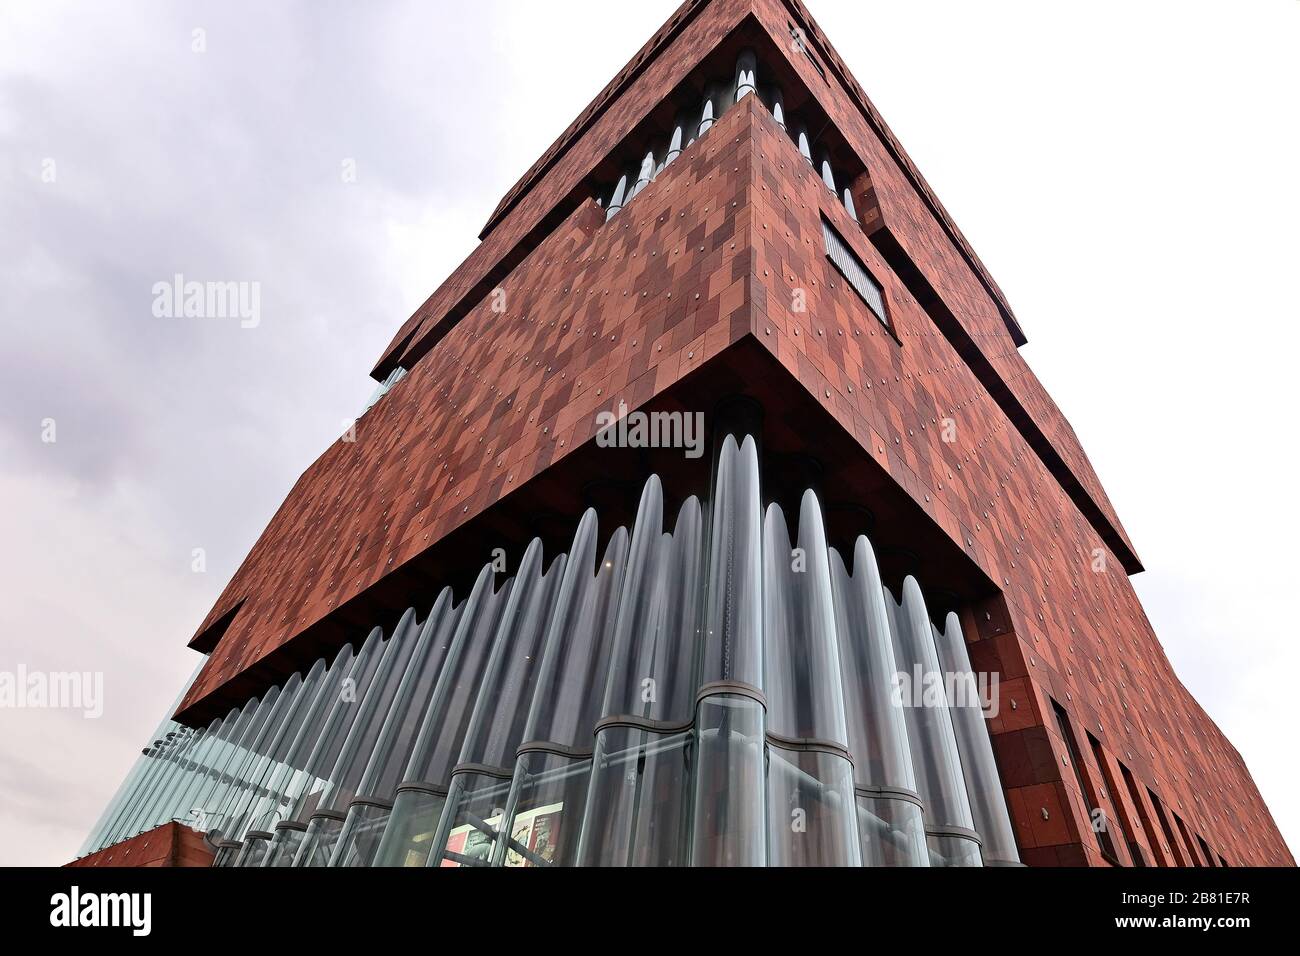 MAS, the Museum aan de Stroom, a museum in the Flemish port city of Antwerp. Stock Photo